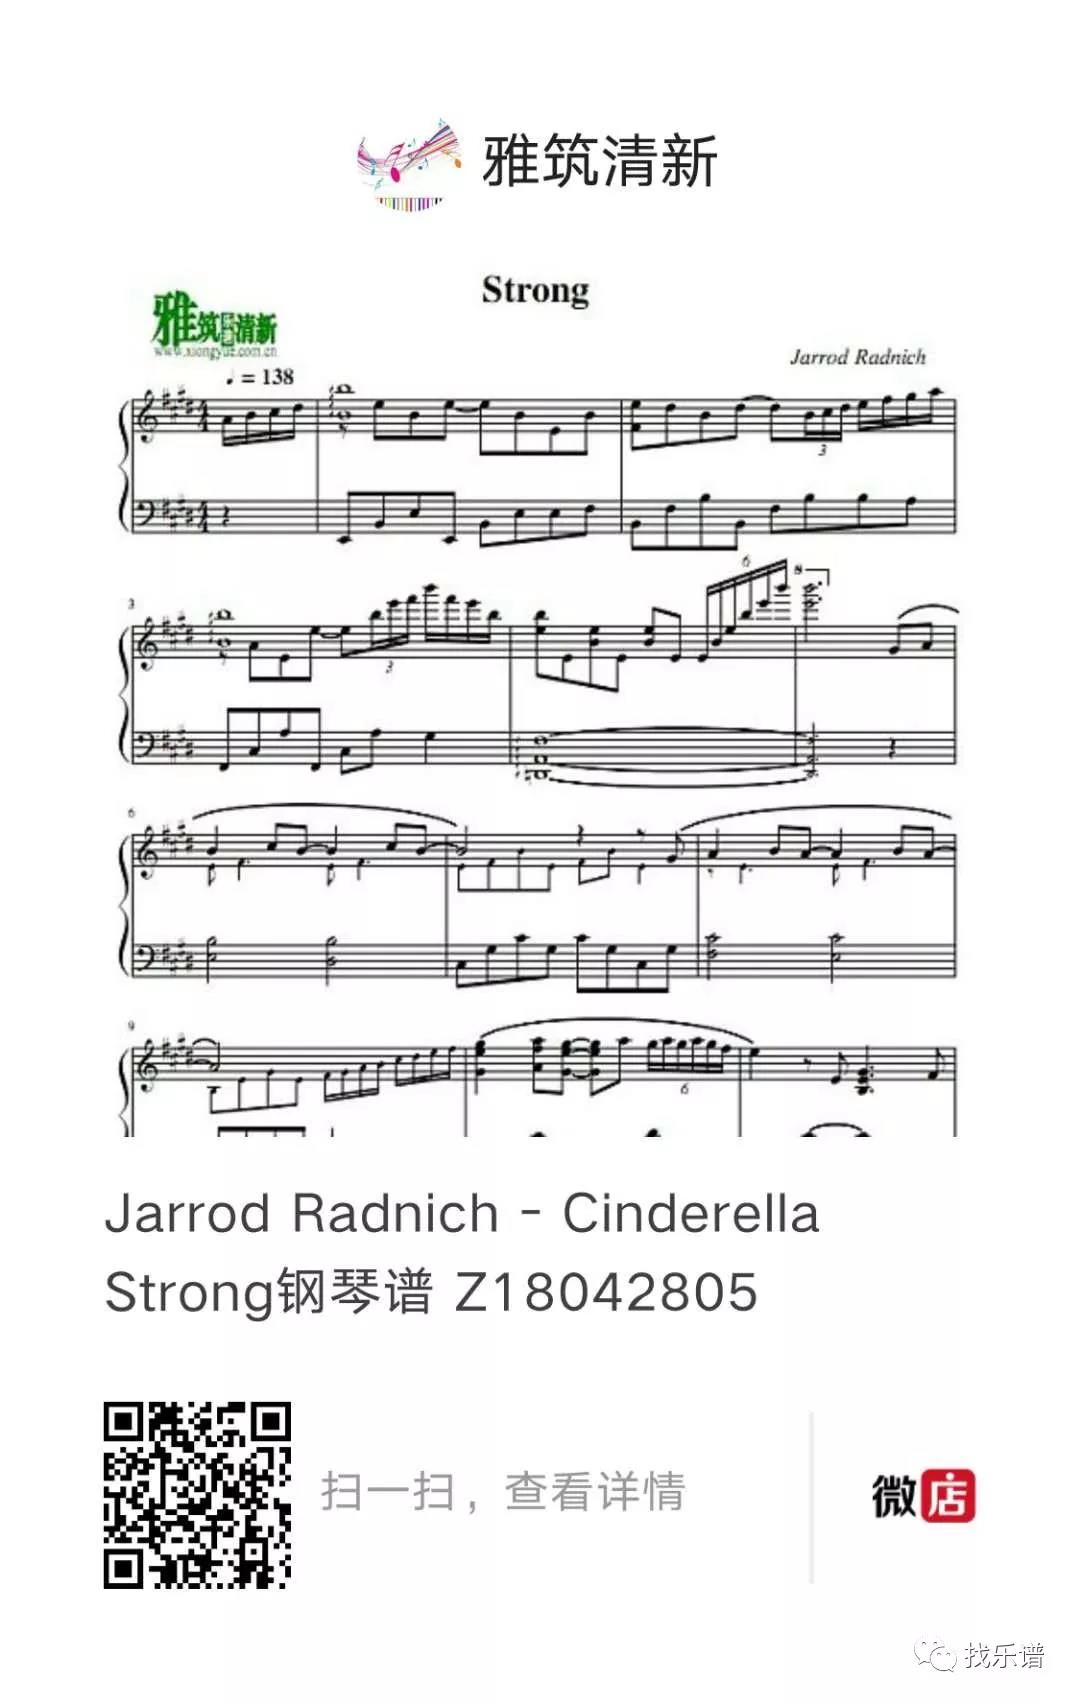 Jarrod Radnich - Cinderella Strong 